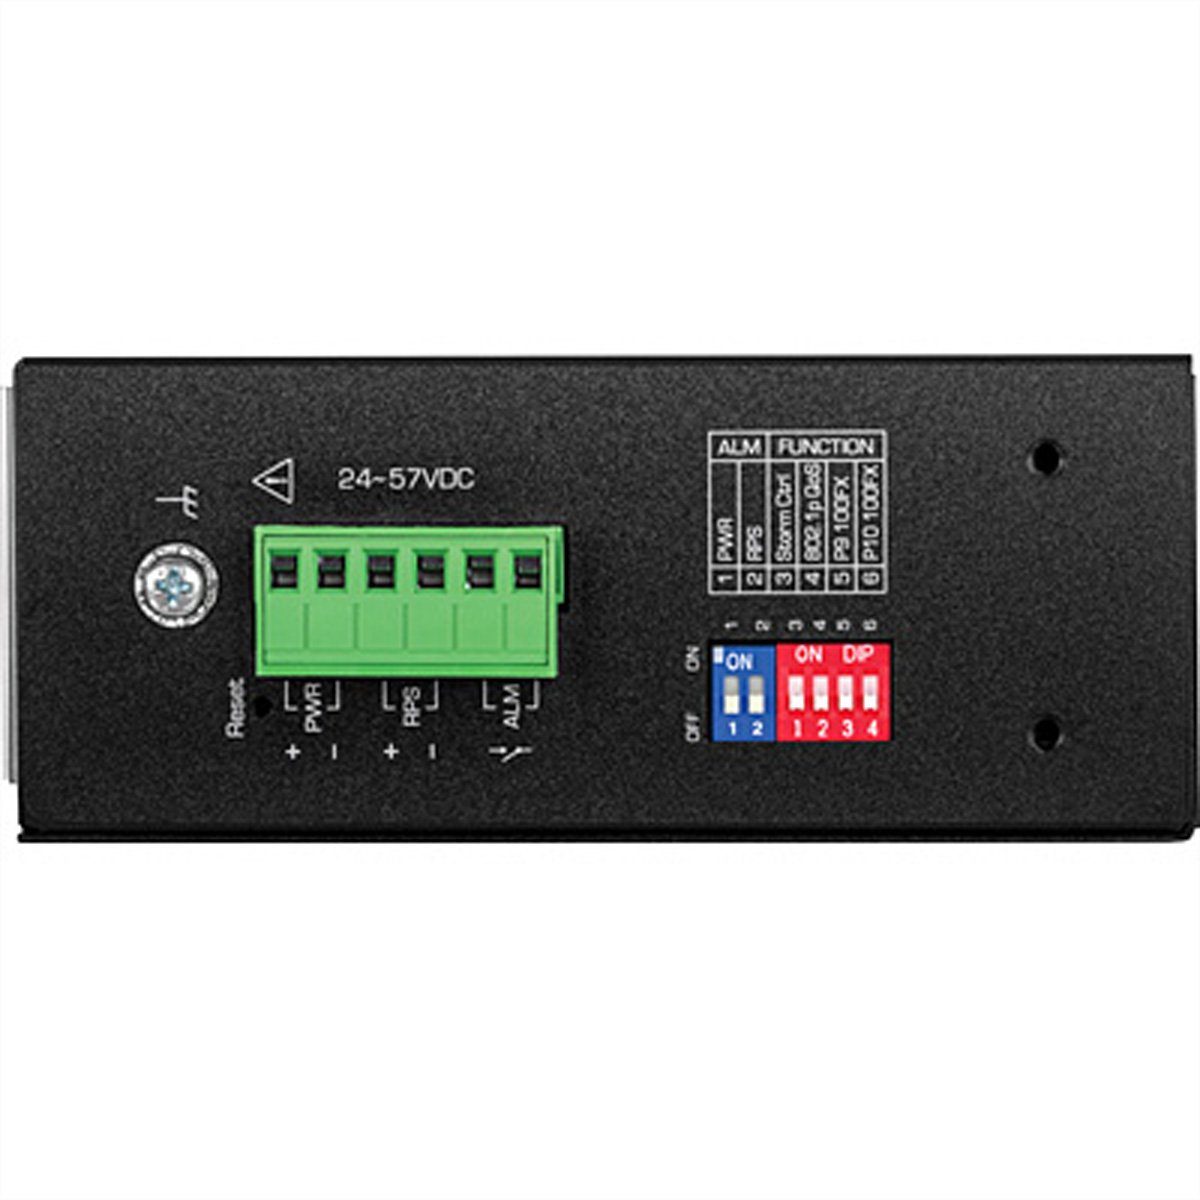 TI-PG102i Industrial Netzwerk-Switch PoE+ Managed 10-Port Trendnet DIN-Rail Switch Gigabit